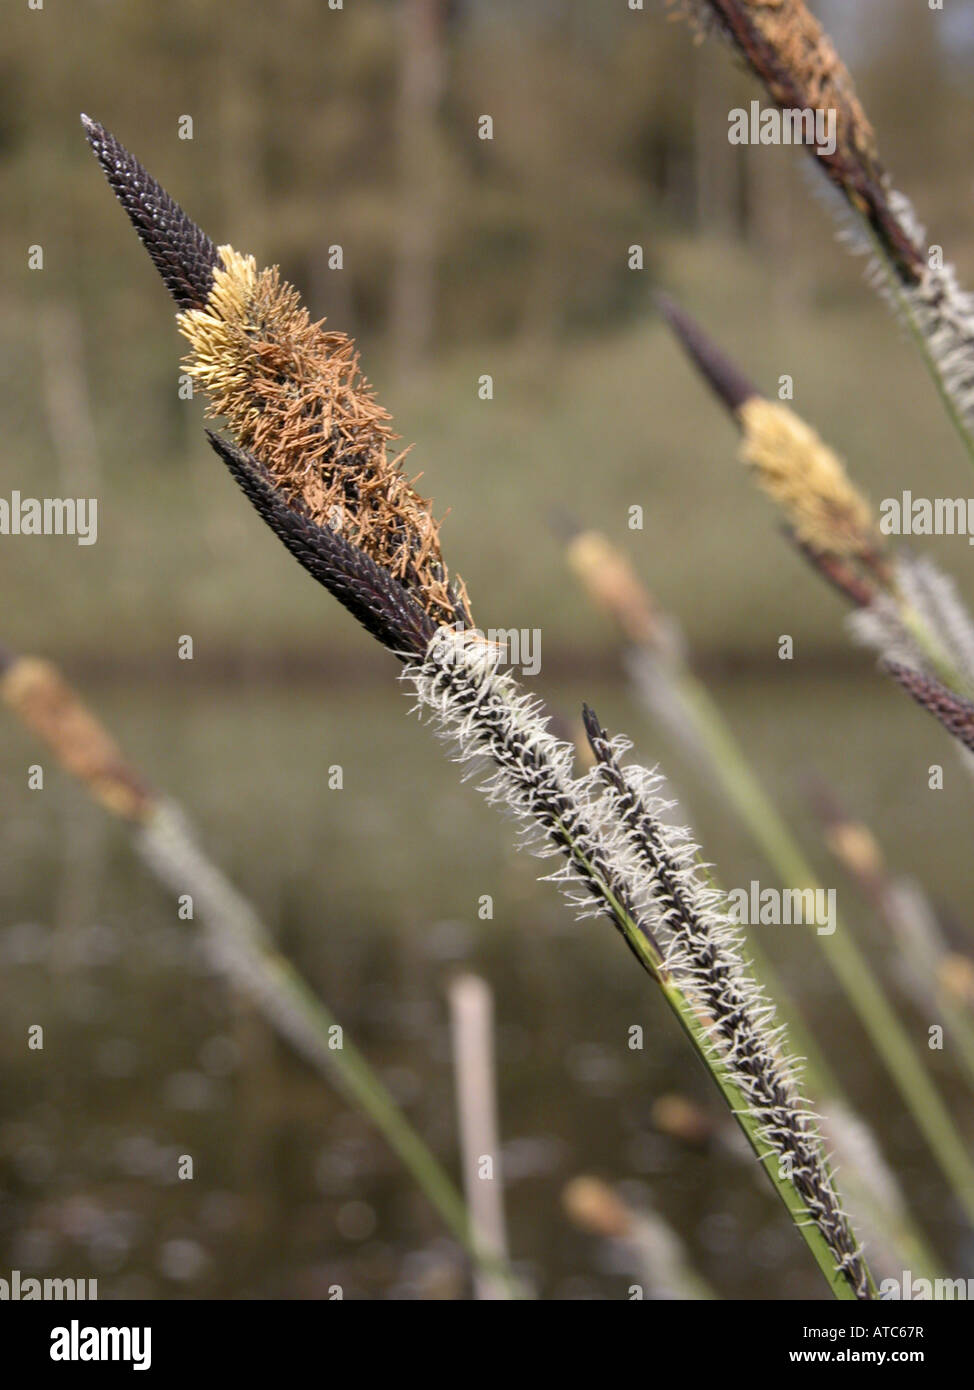 Snello tussock-carici, snello tufted-carici (Carex acuta, Carex gracilis), impianti con maschio e femmina blossoms Foto Stock